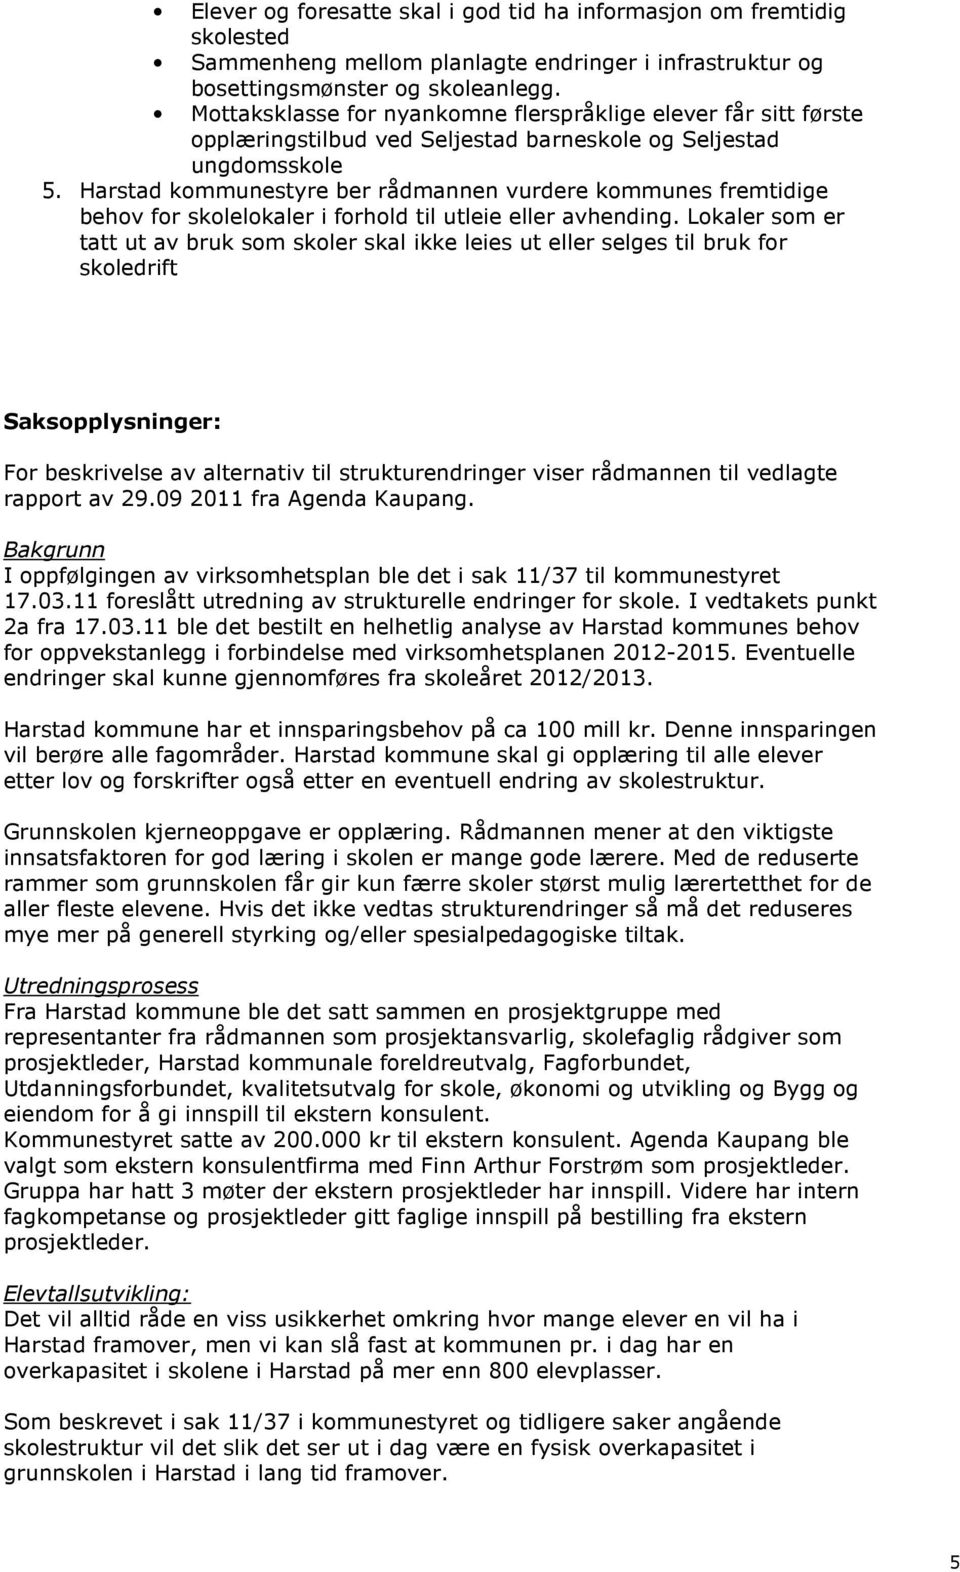 Harstad kommunestyre ber rådmannen vurdere kommunes fremtidige behov for skolelokaler i forhold til utleie eller avhending.